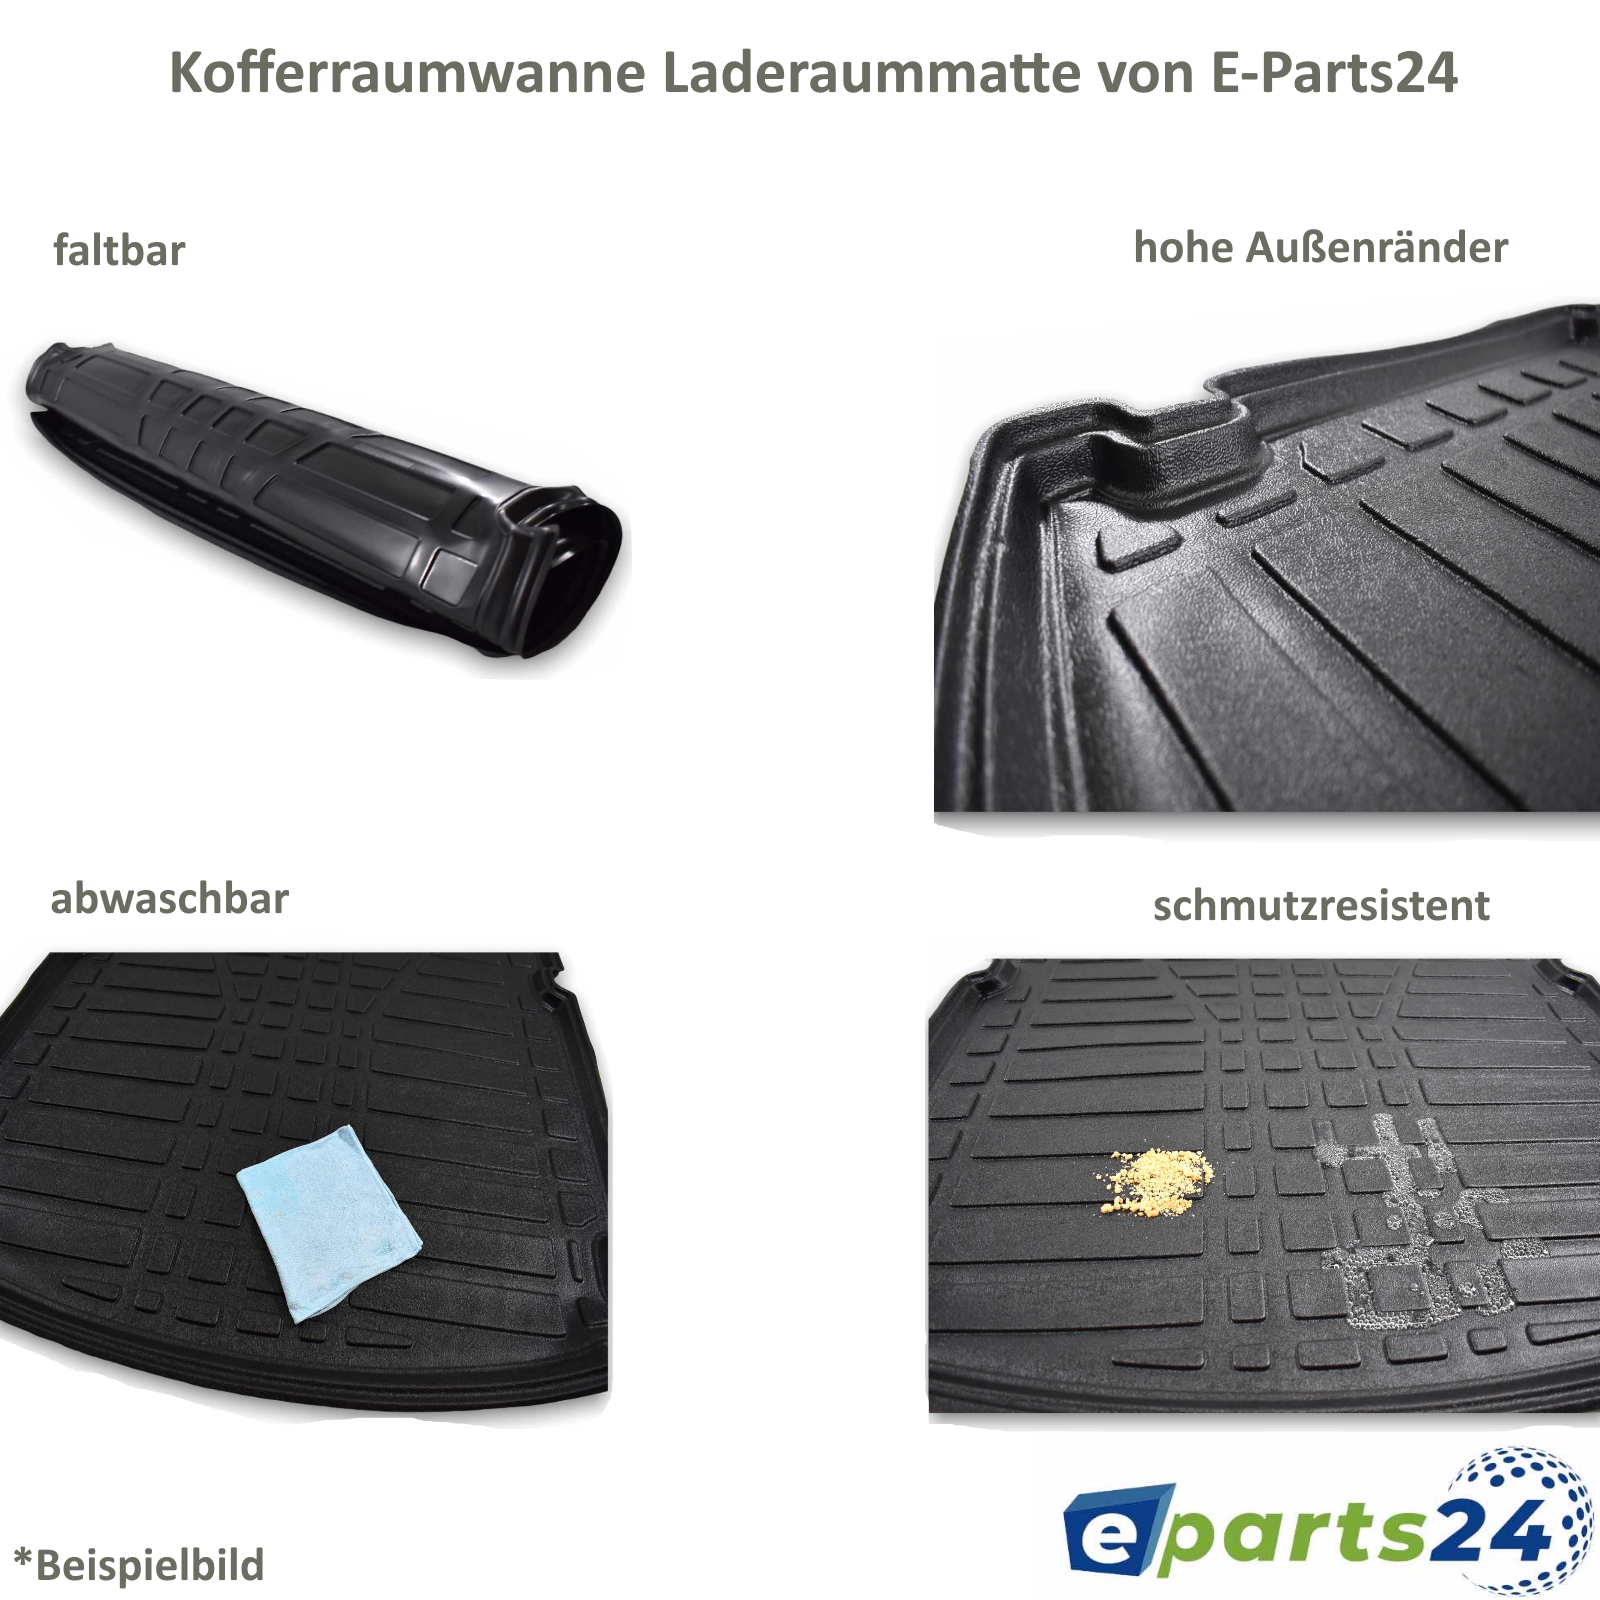 Kofferraumwanne Kofferraummatte Gummi für – a E-Parts24 Sports Opel K Tourer Astra